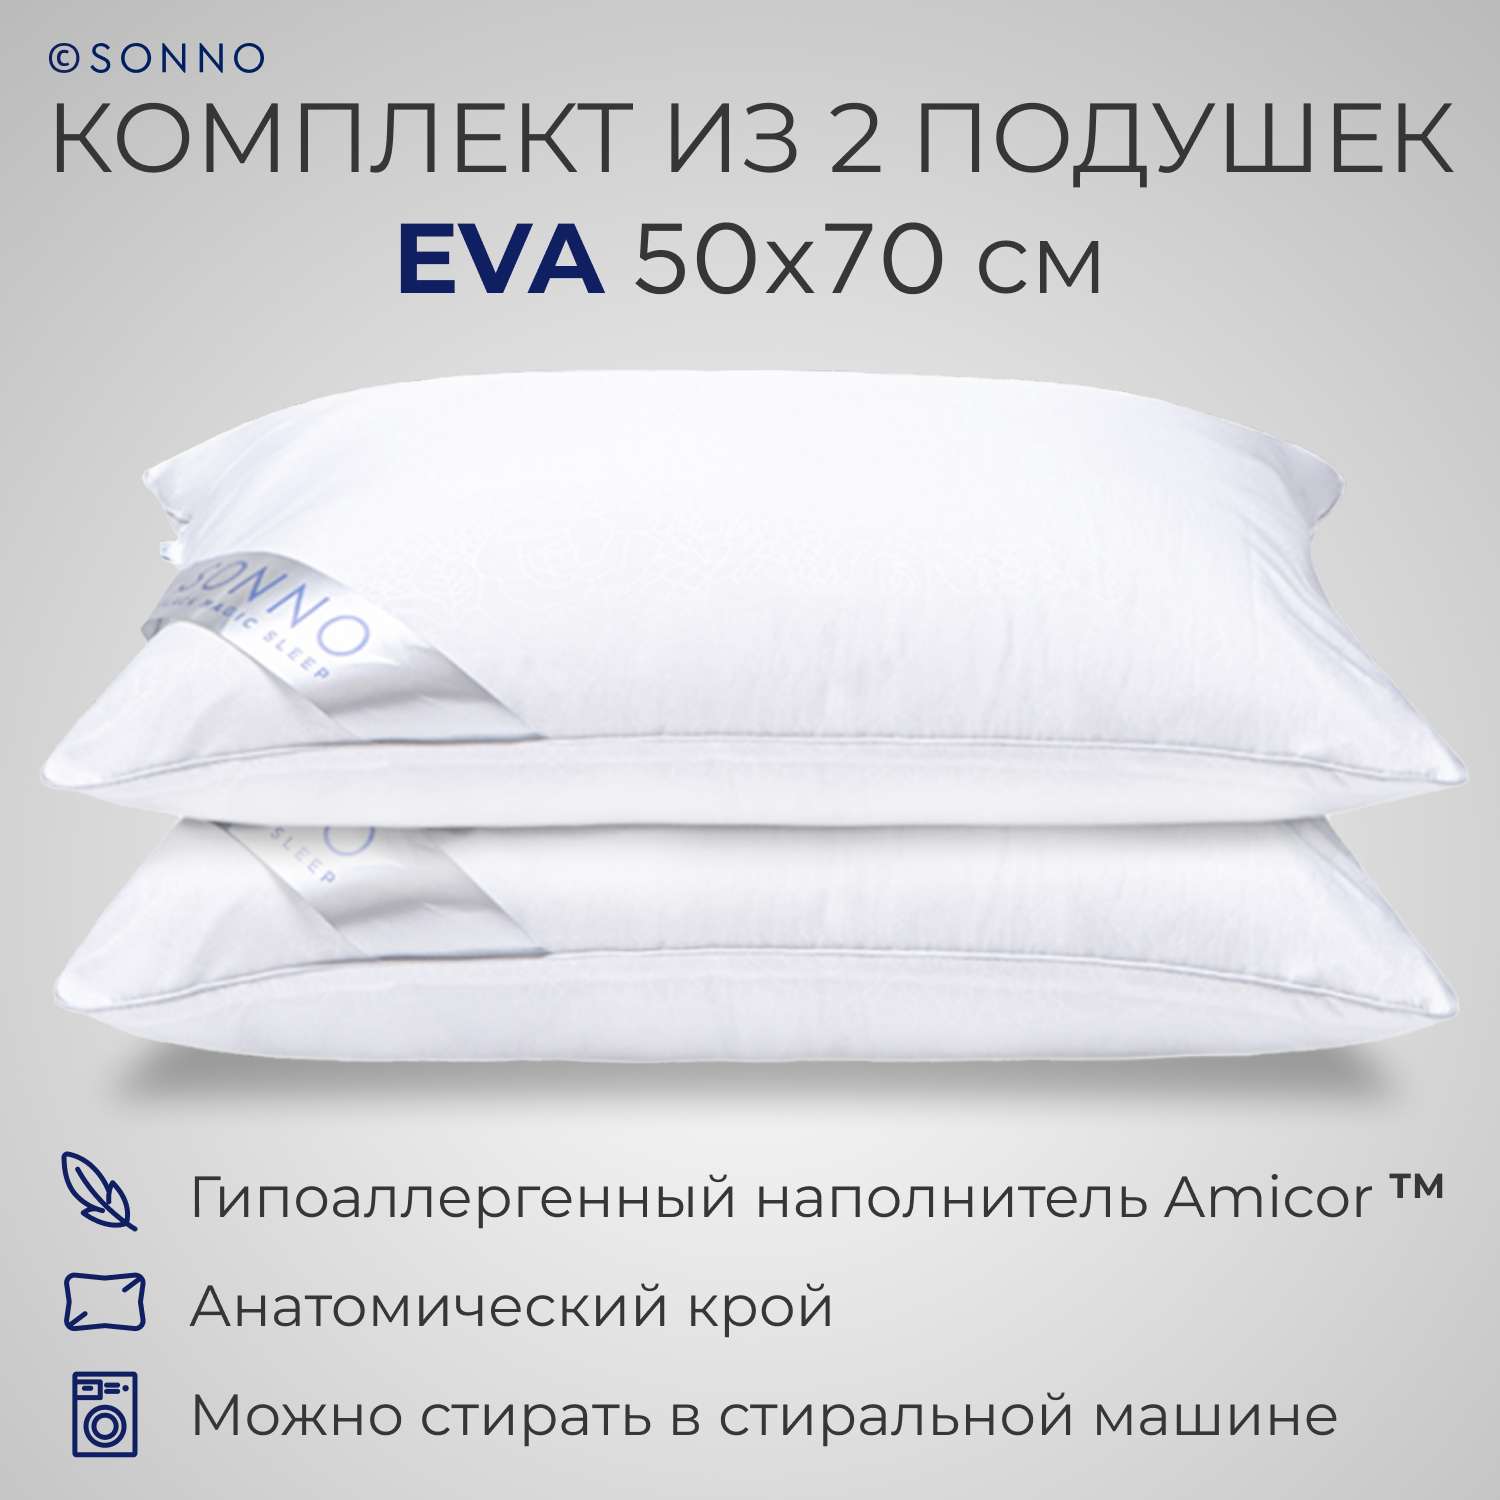 Подушка SONNO EVA 50x70 см Комплект из двух подушек для сна гипоаллергенный наполнитель Amicor TM - фото 1